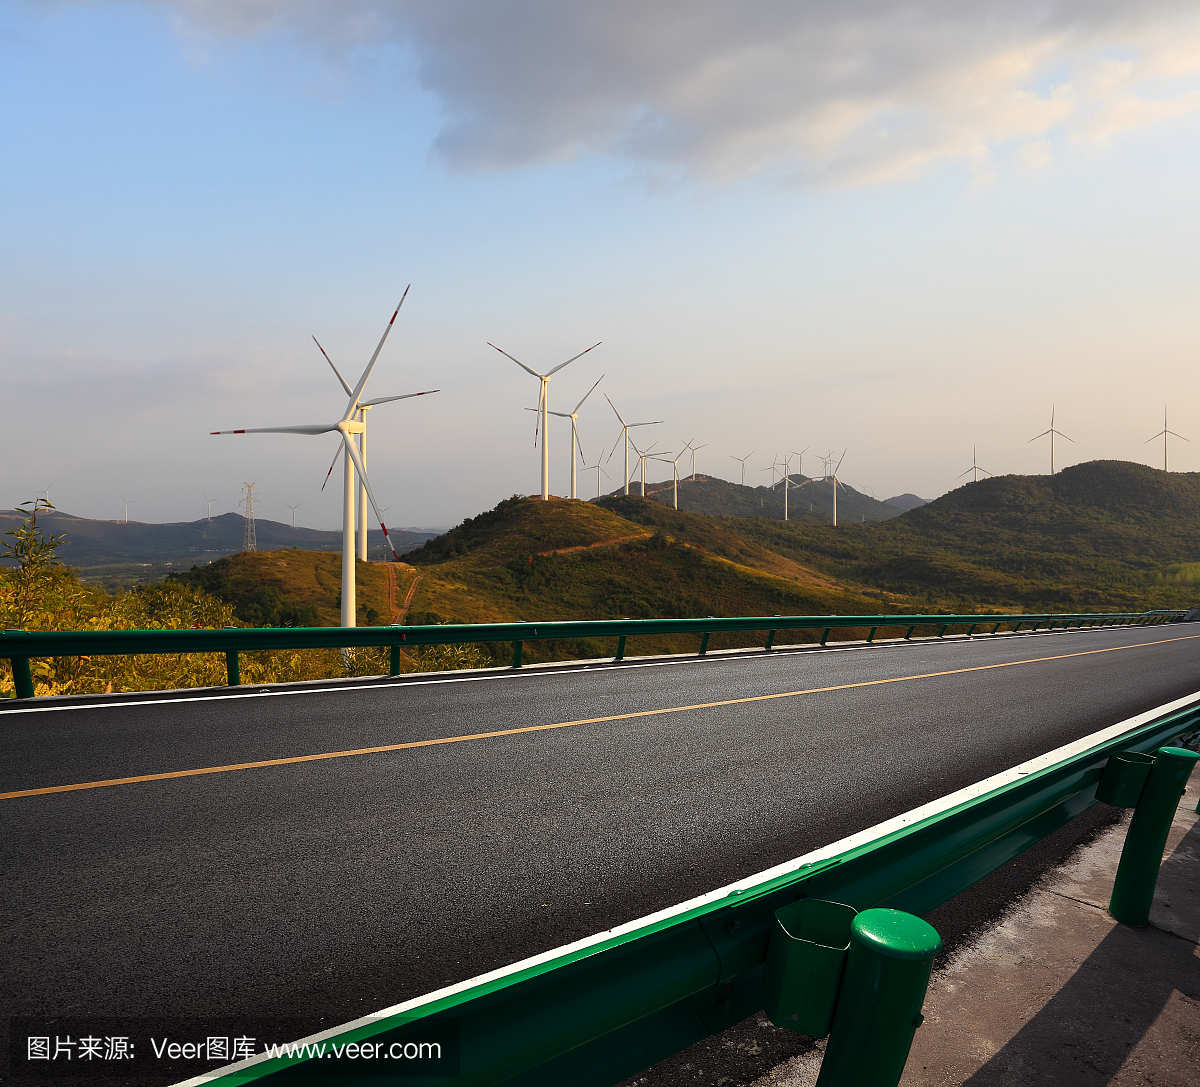 空路地面采用生态环保发电动力涡轮发电的绿色能源